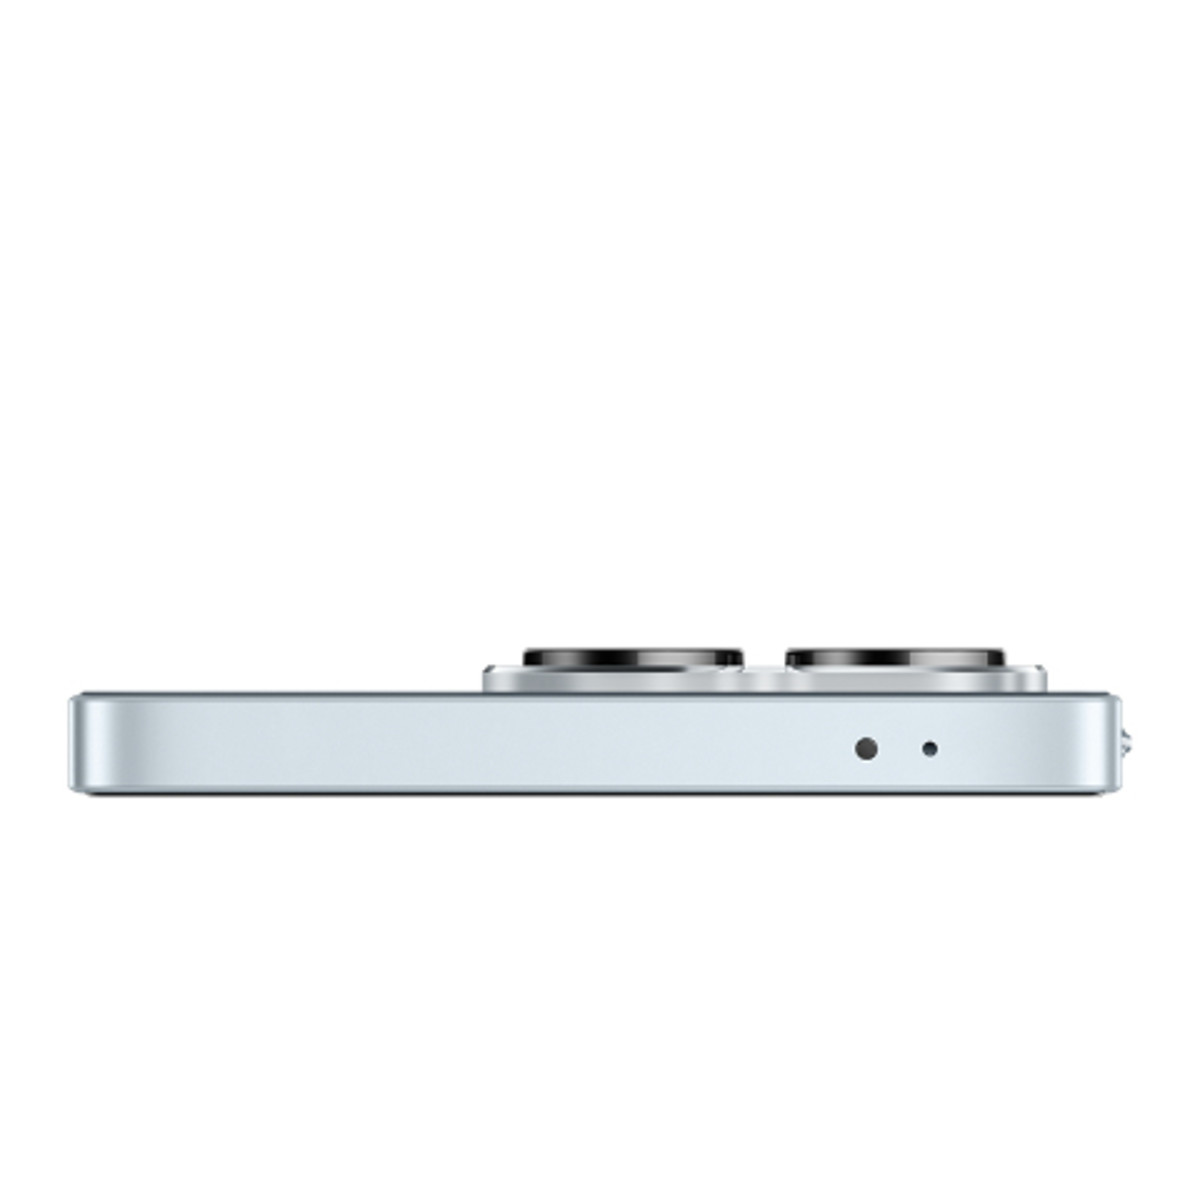 X8a 4G 128GB - Titanium Silver